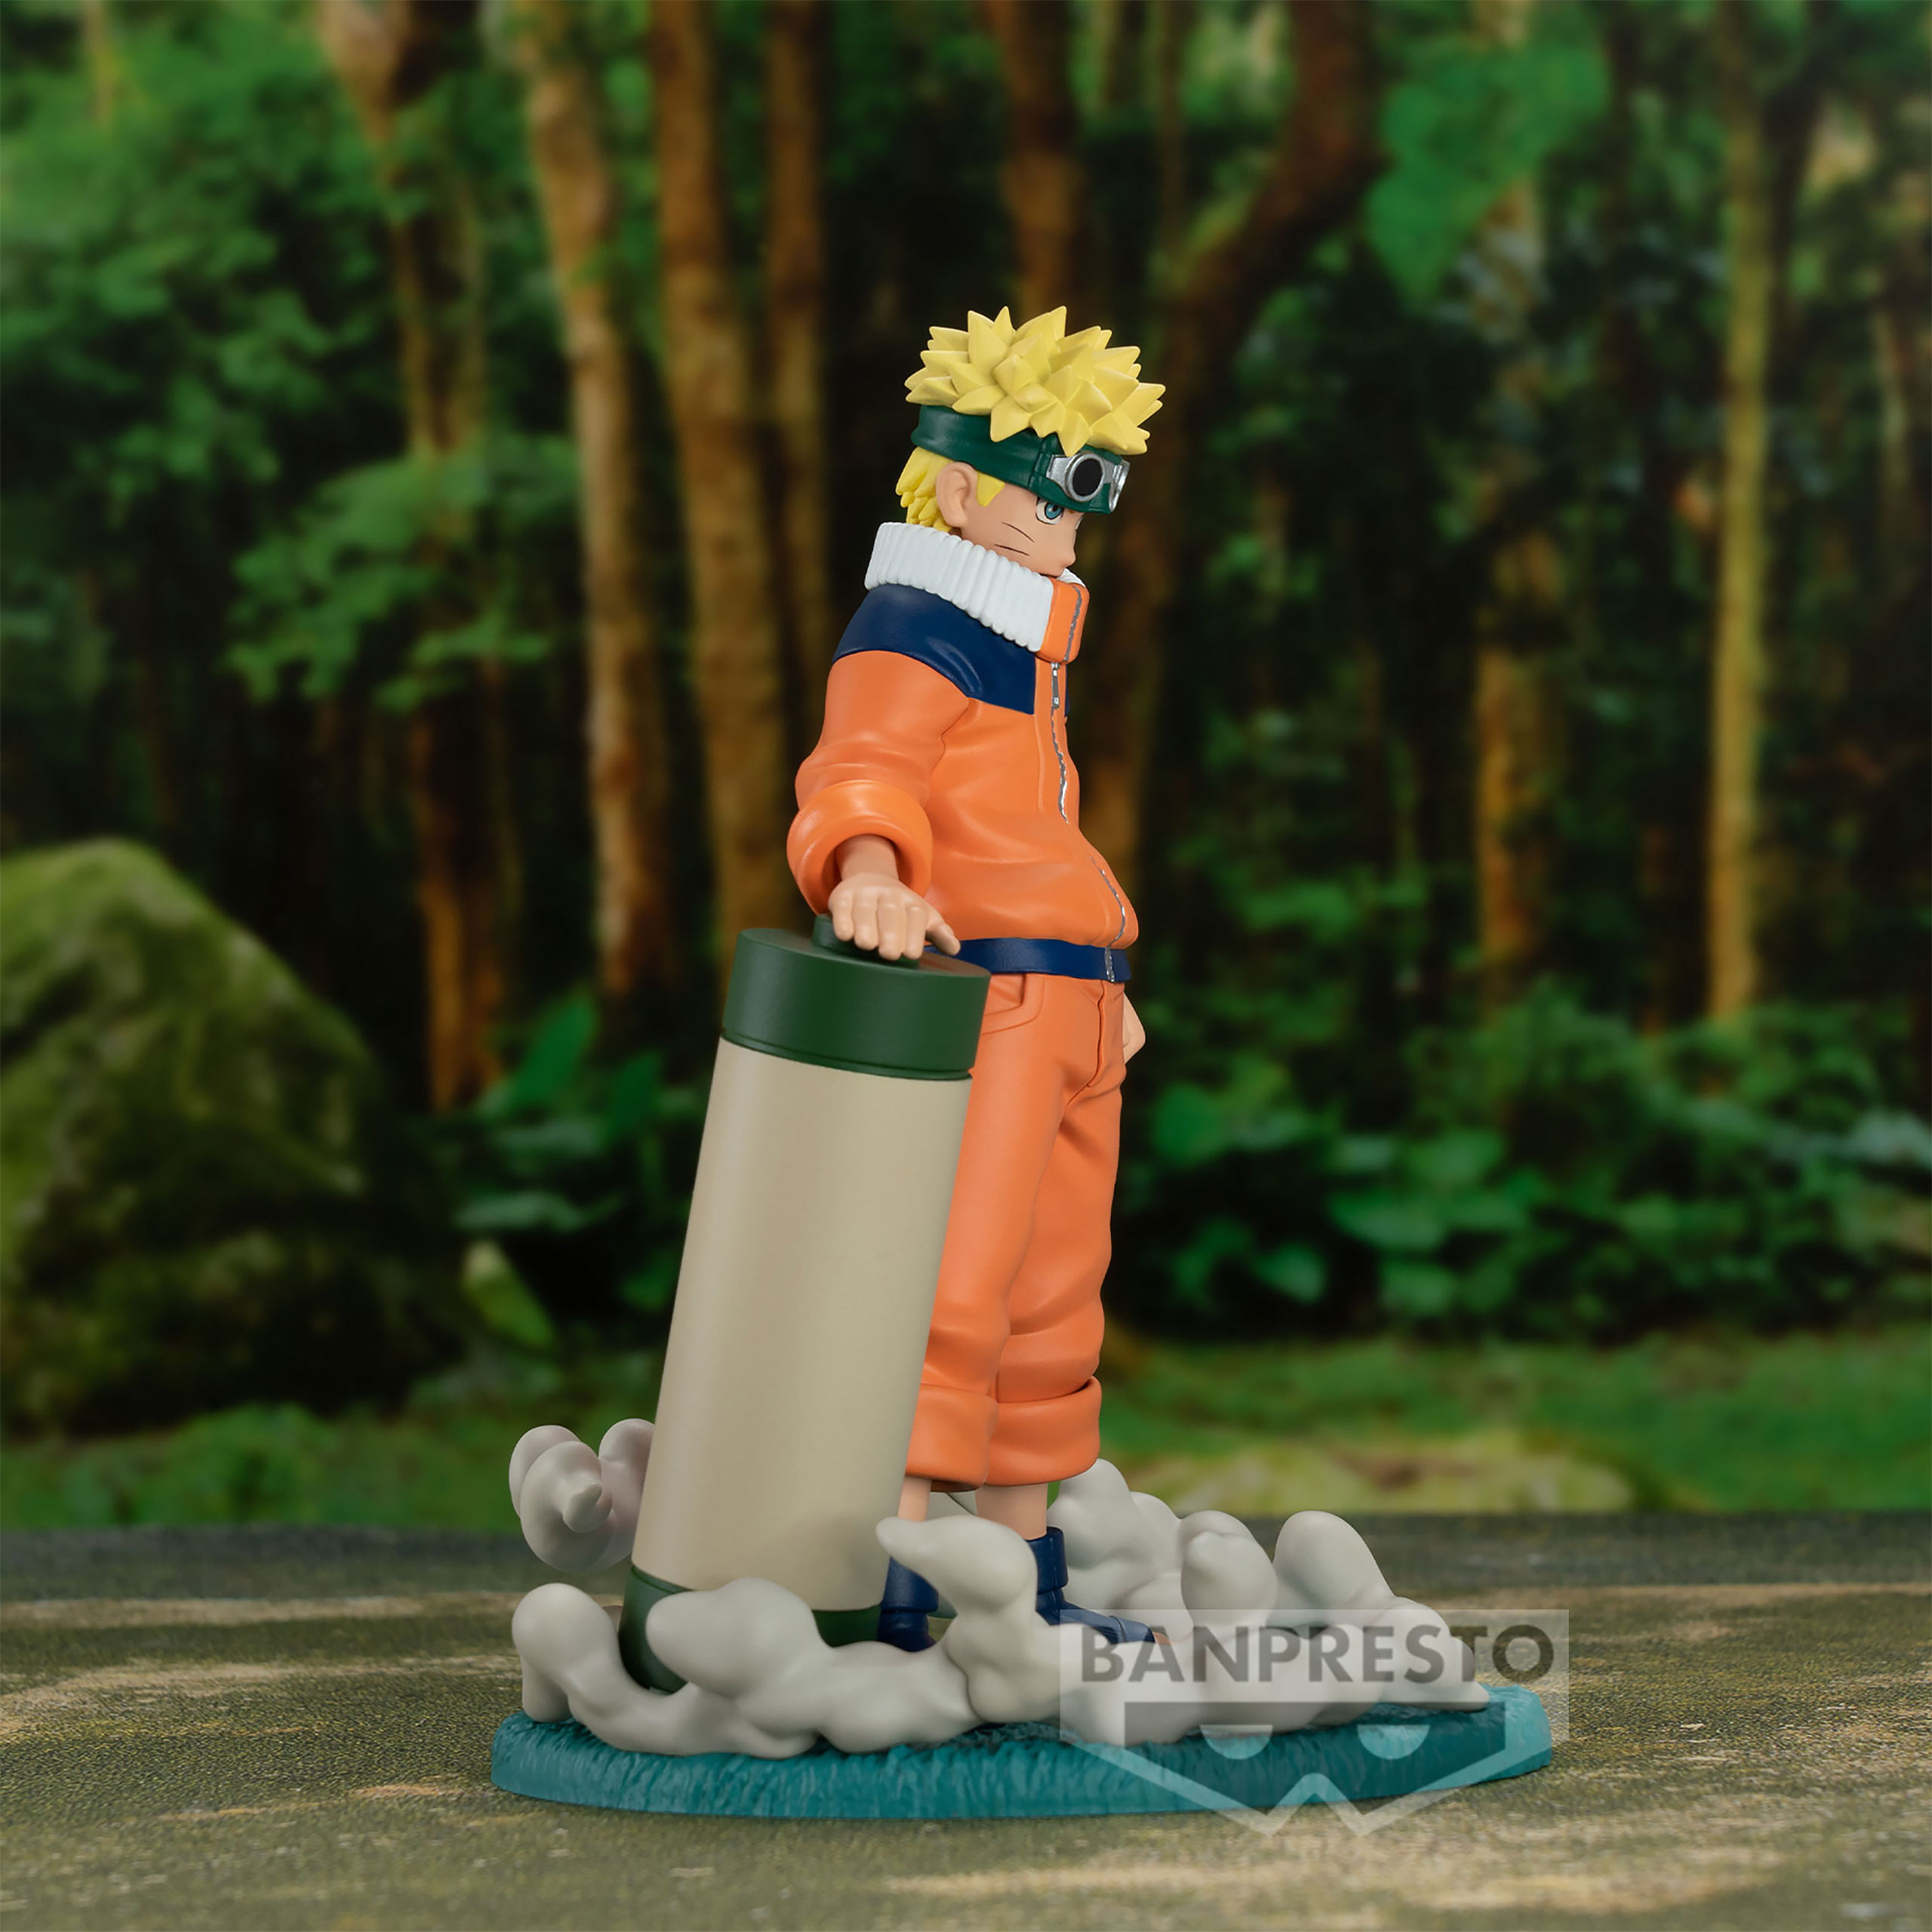 Naruto - Figurine Uzumaki Naruto Memorable Saga